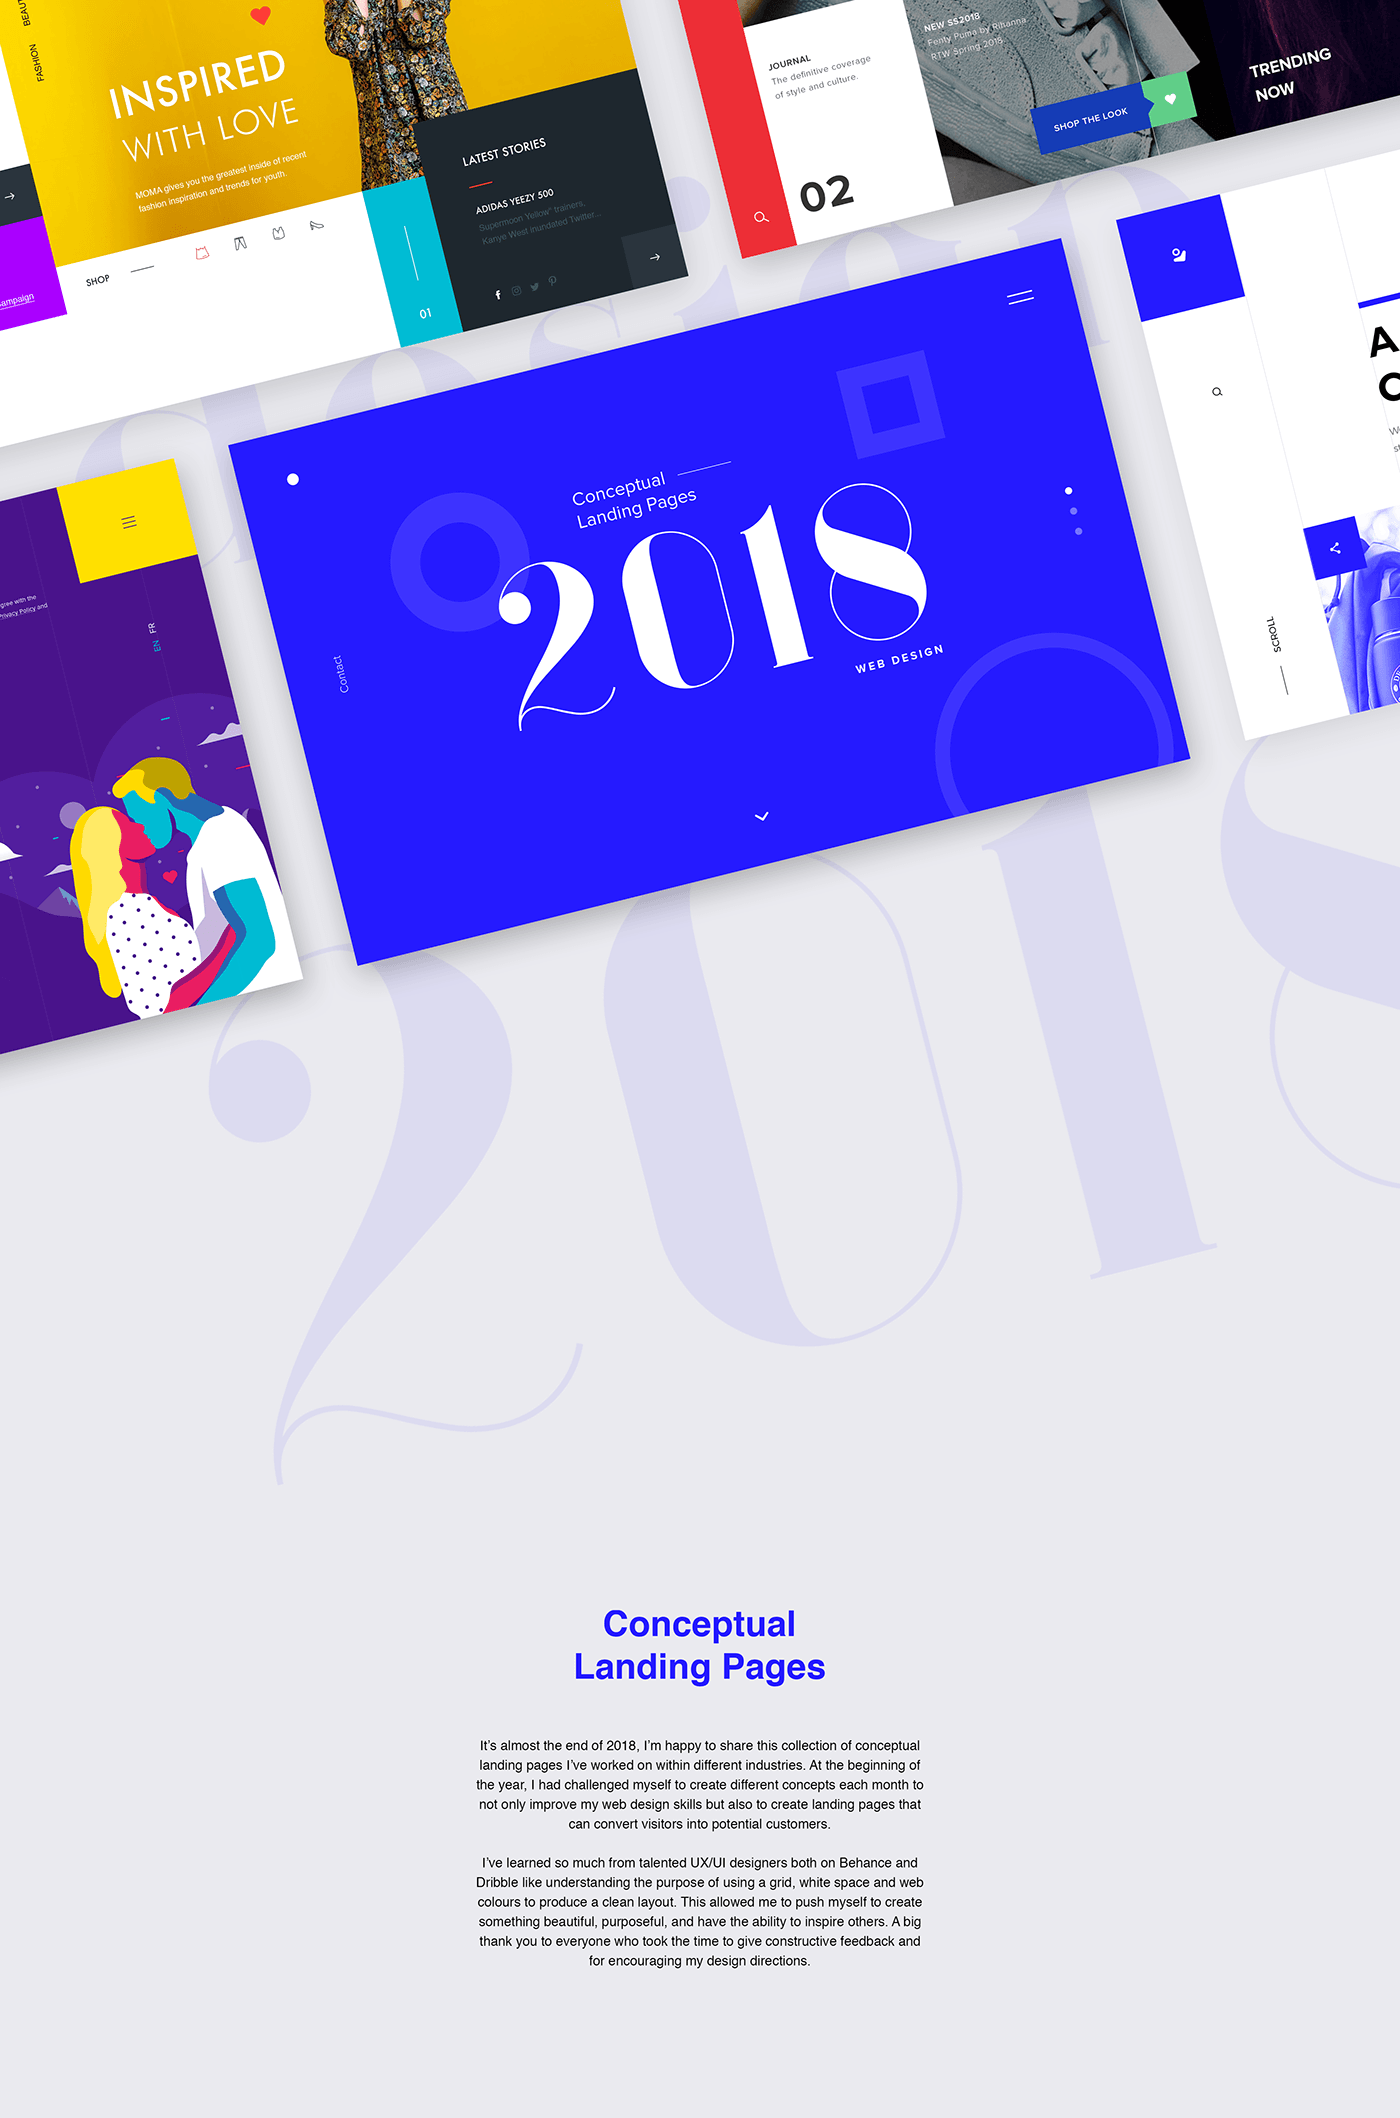 Google 2018 Conceptual Logo - Conceptual Landing Pages 2018 - Web Design on Behance